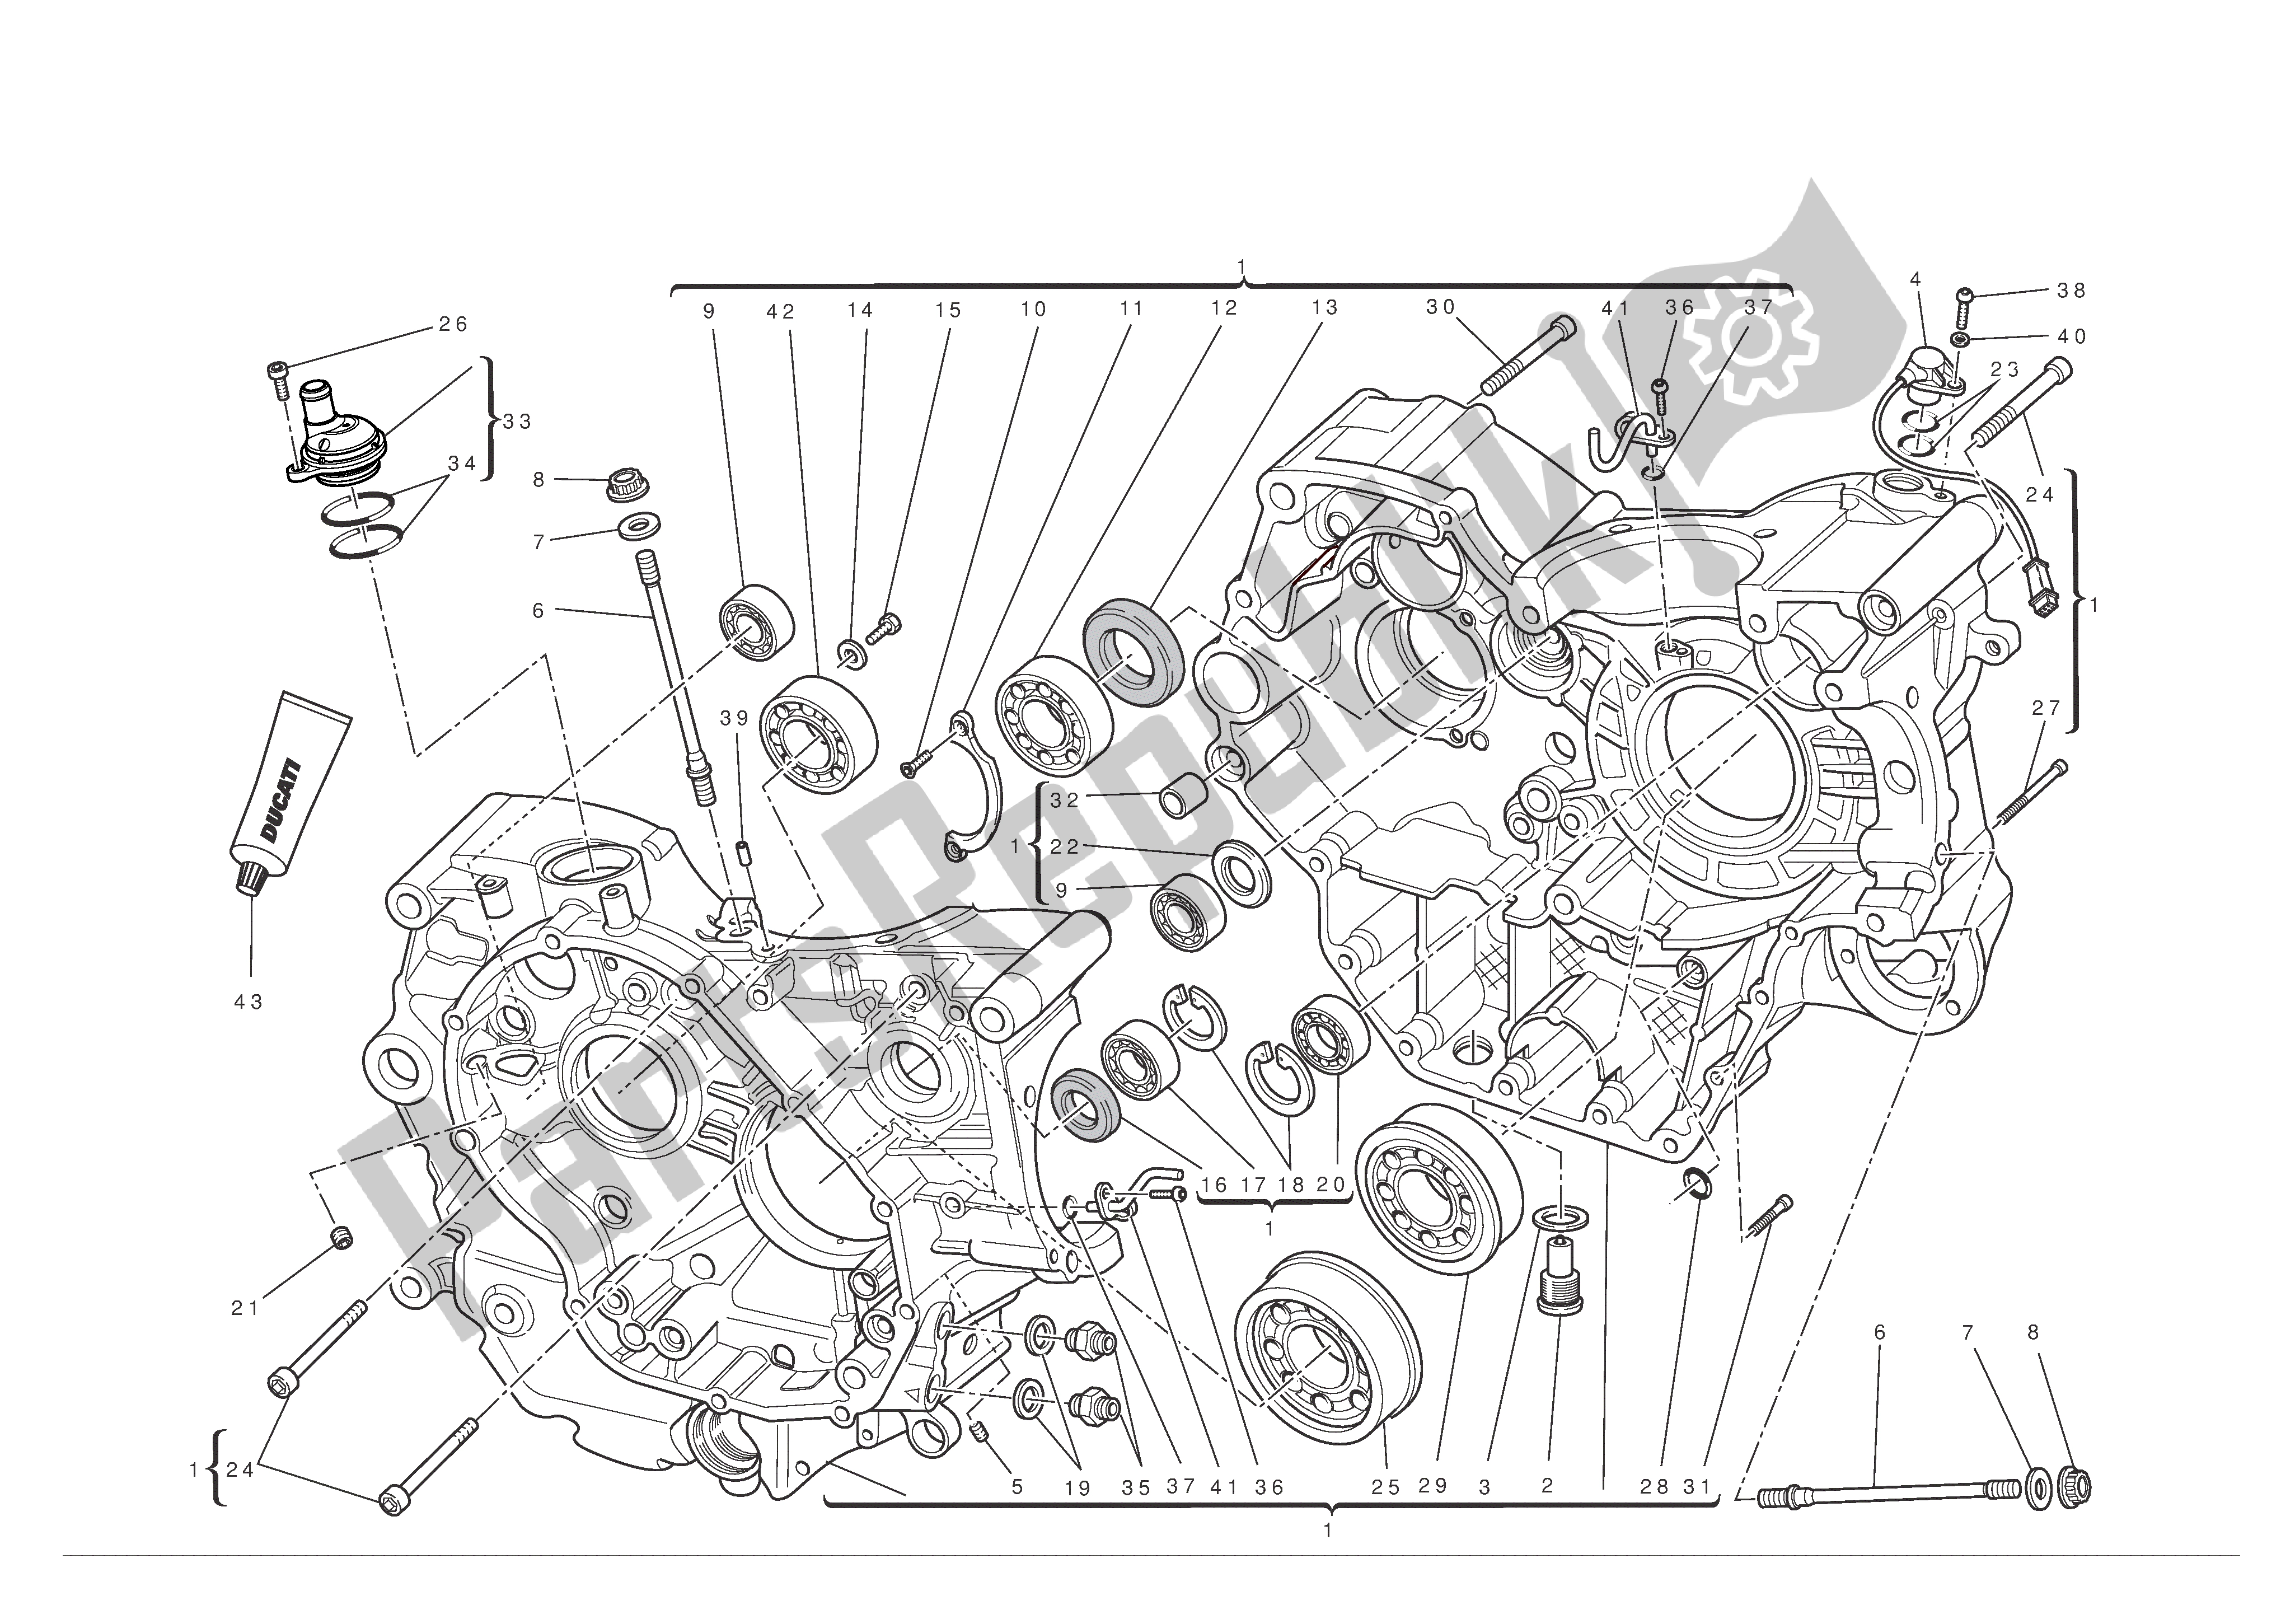 Toutes les pièces pour le Demi-carter du Ducati Hypermotard EVO 1100 2011